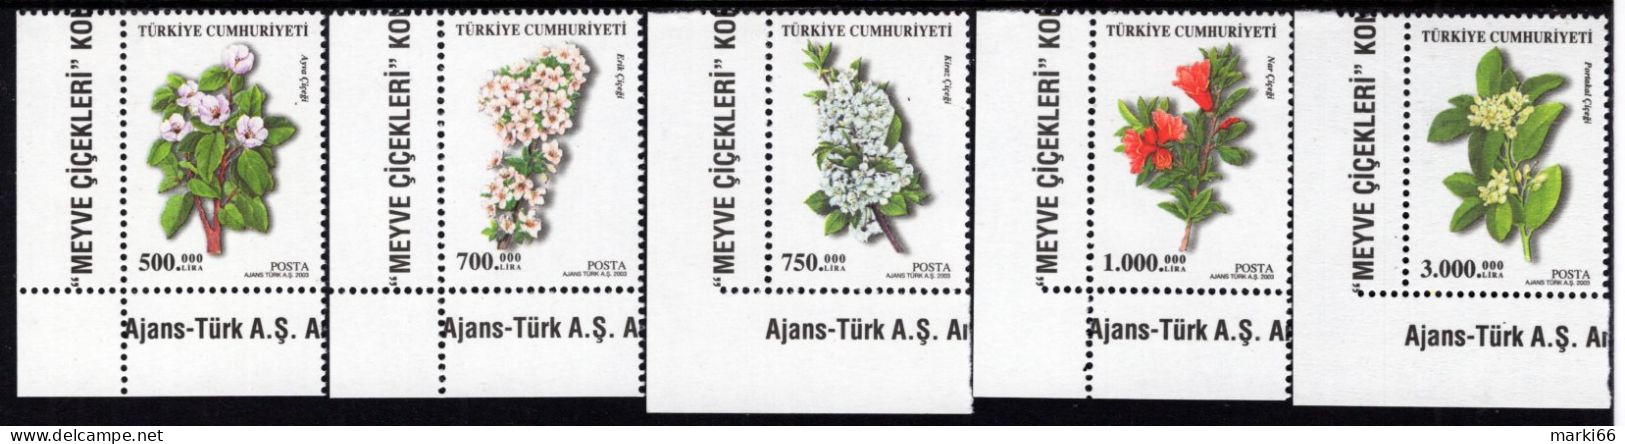 Turkey - 2003 - Flowering Trees - Mint Stamp Set - Unused Stamps